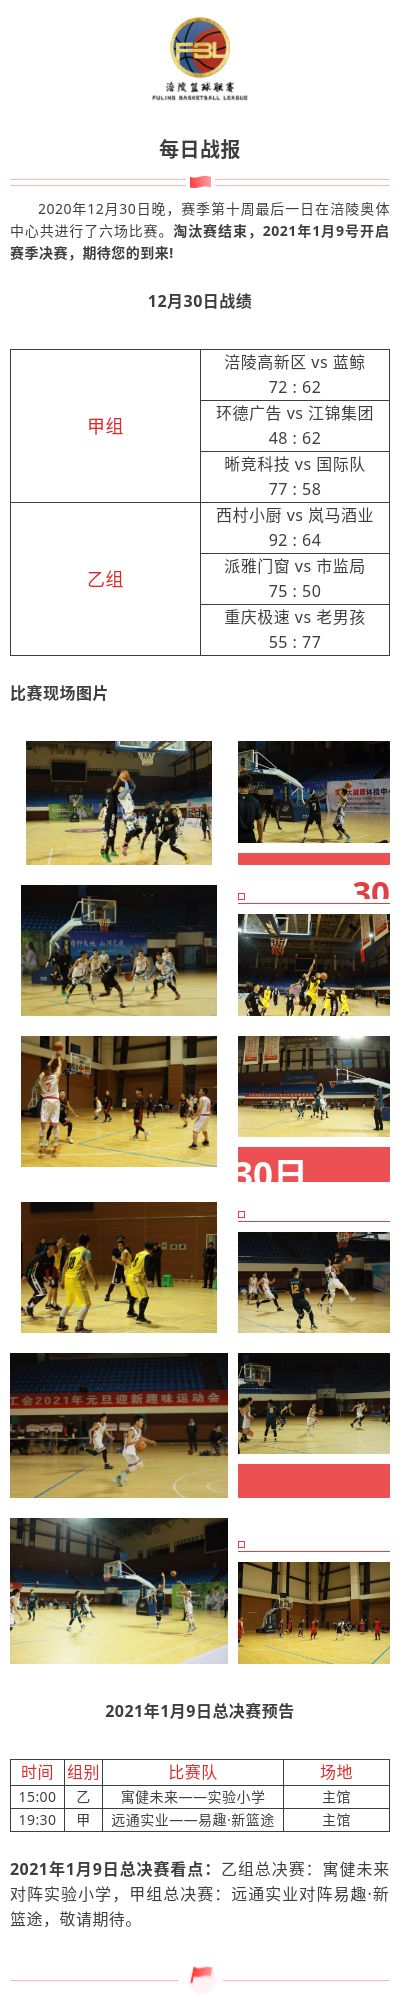 涪陵高新区·涪陵篮球联赛（FBL）2020赛季每日战报12.30